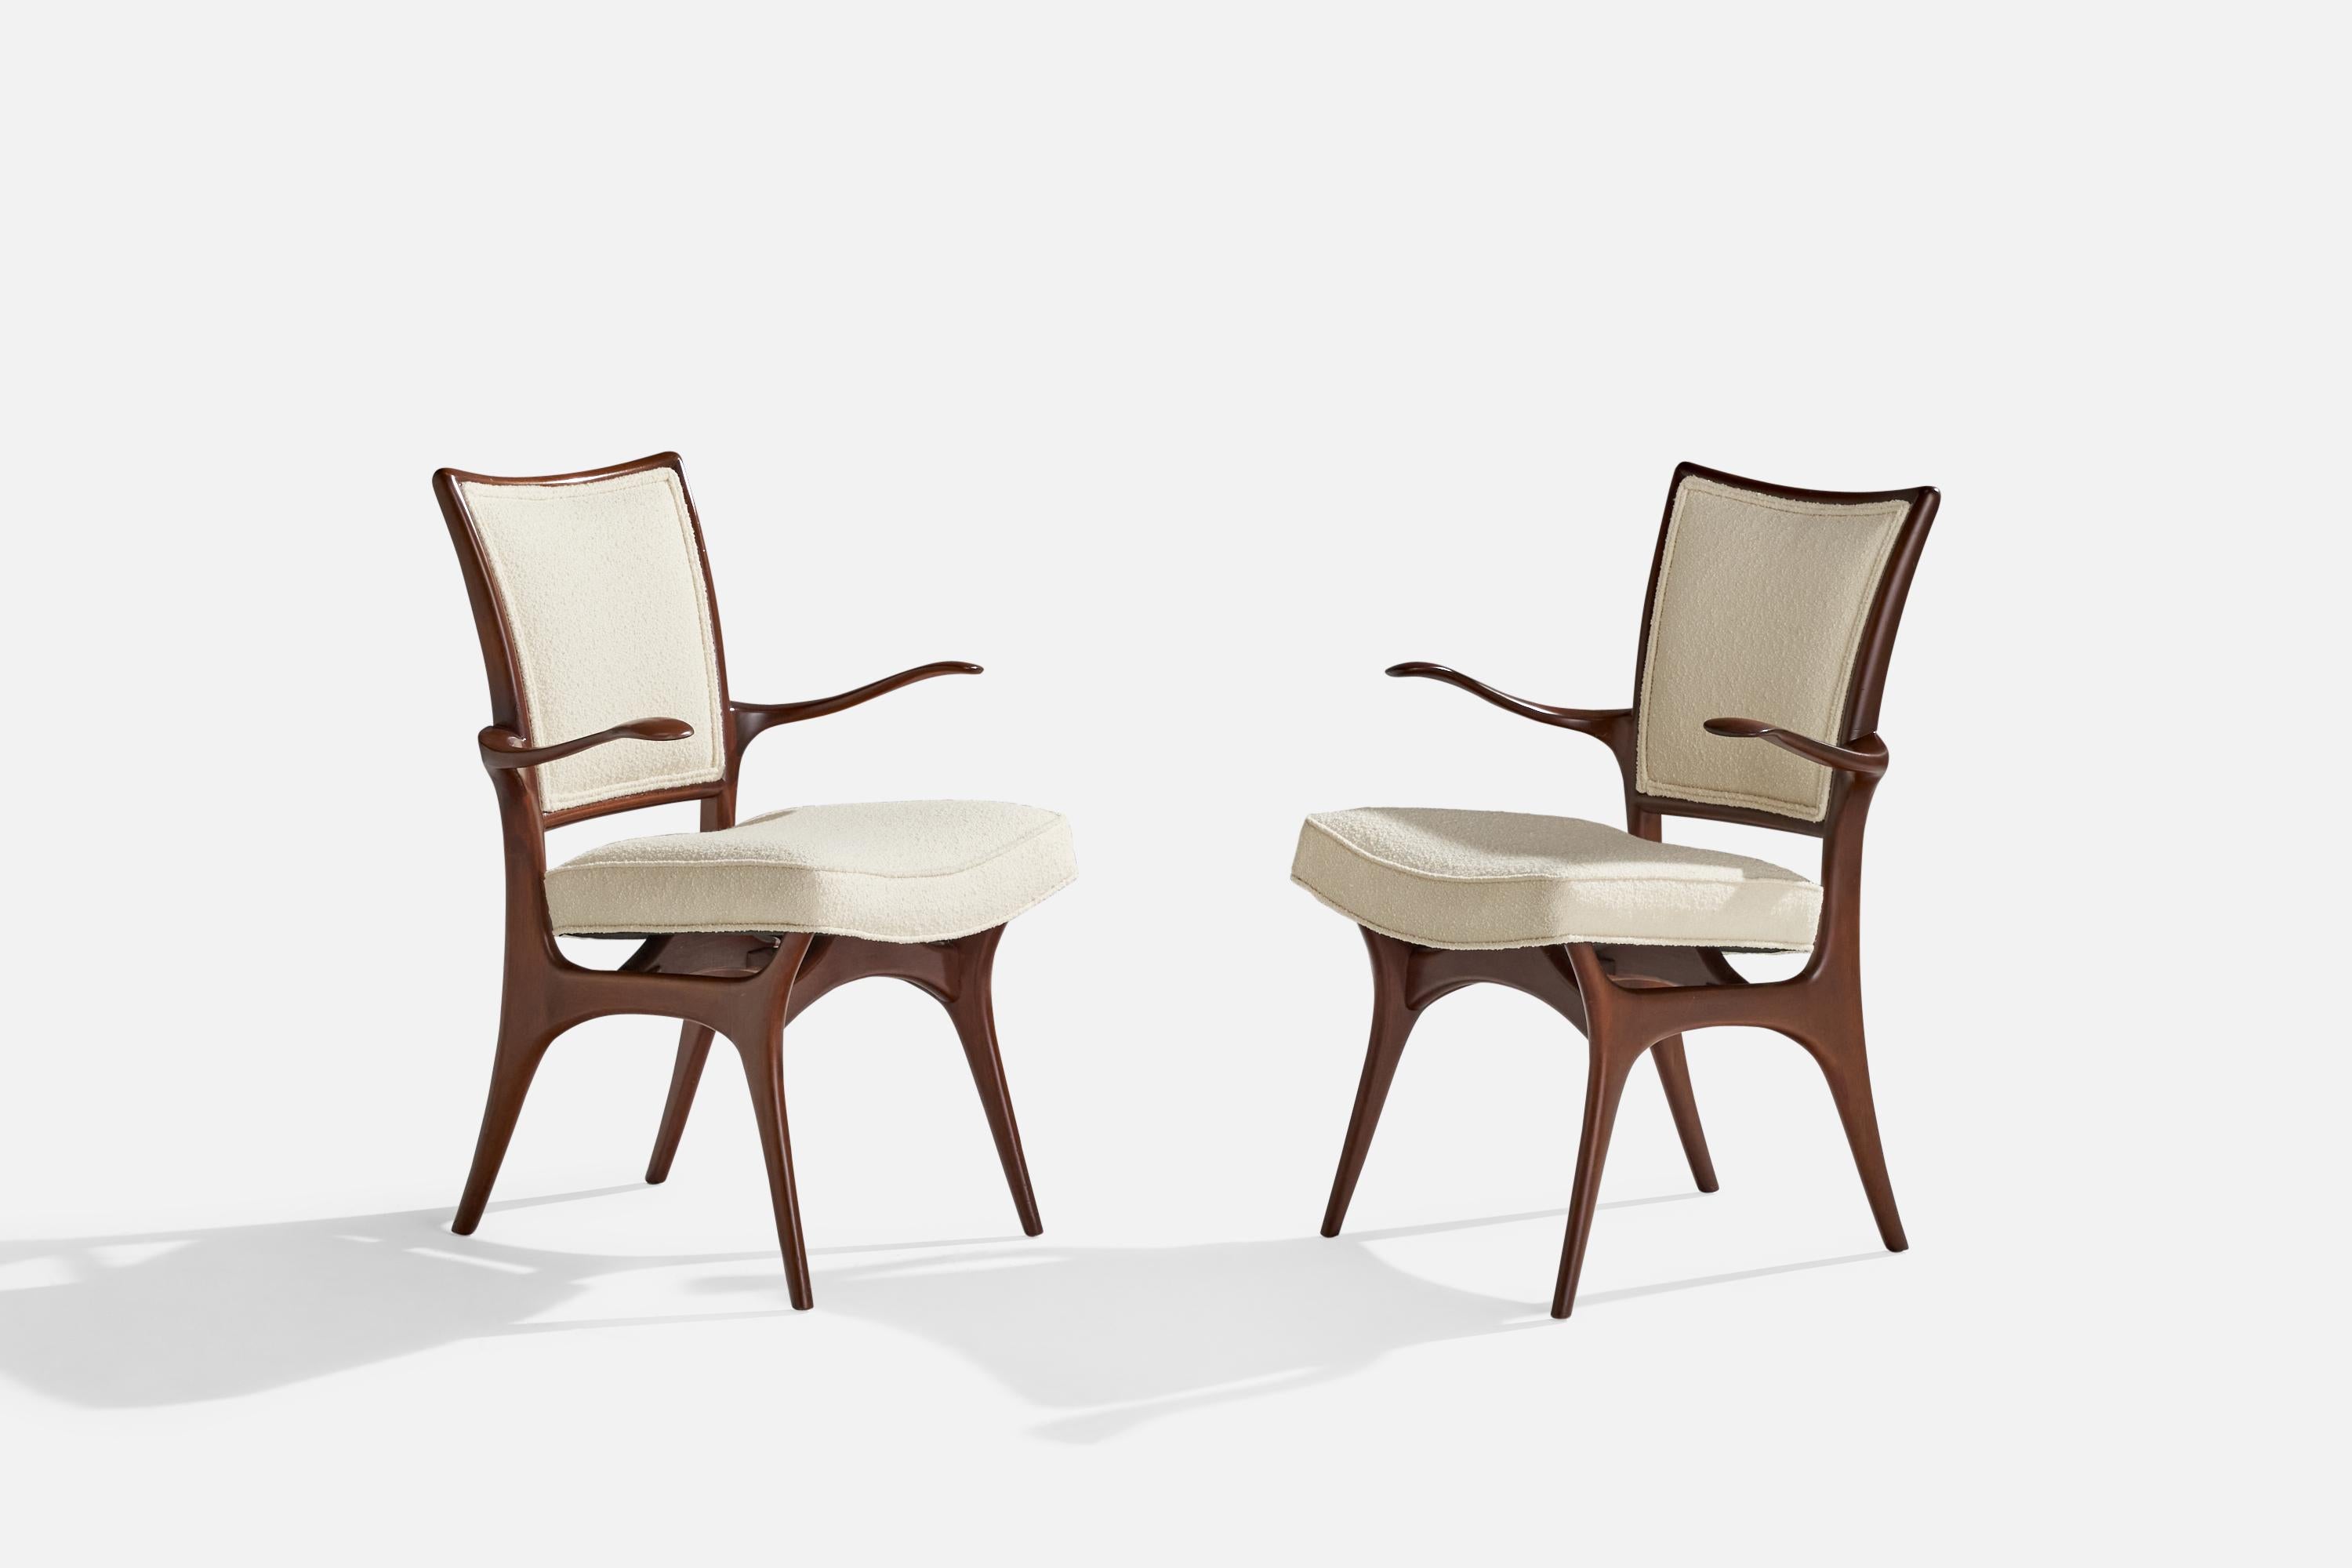 Paire de fauteuils en noyer et tissu bouclé blanc conçus par Vladimir Kagan et produits par Kagan-Dreyfuss, États-Unis, années 1960.

Hauteur d'assise 18